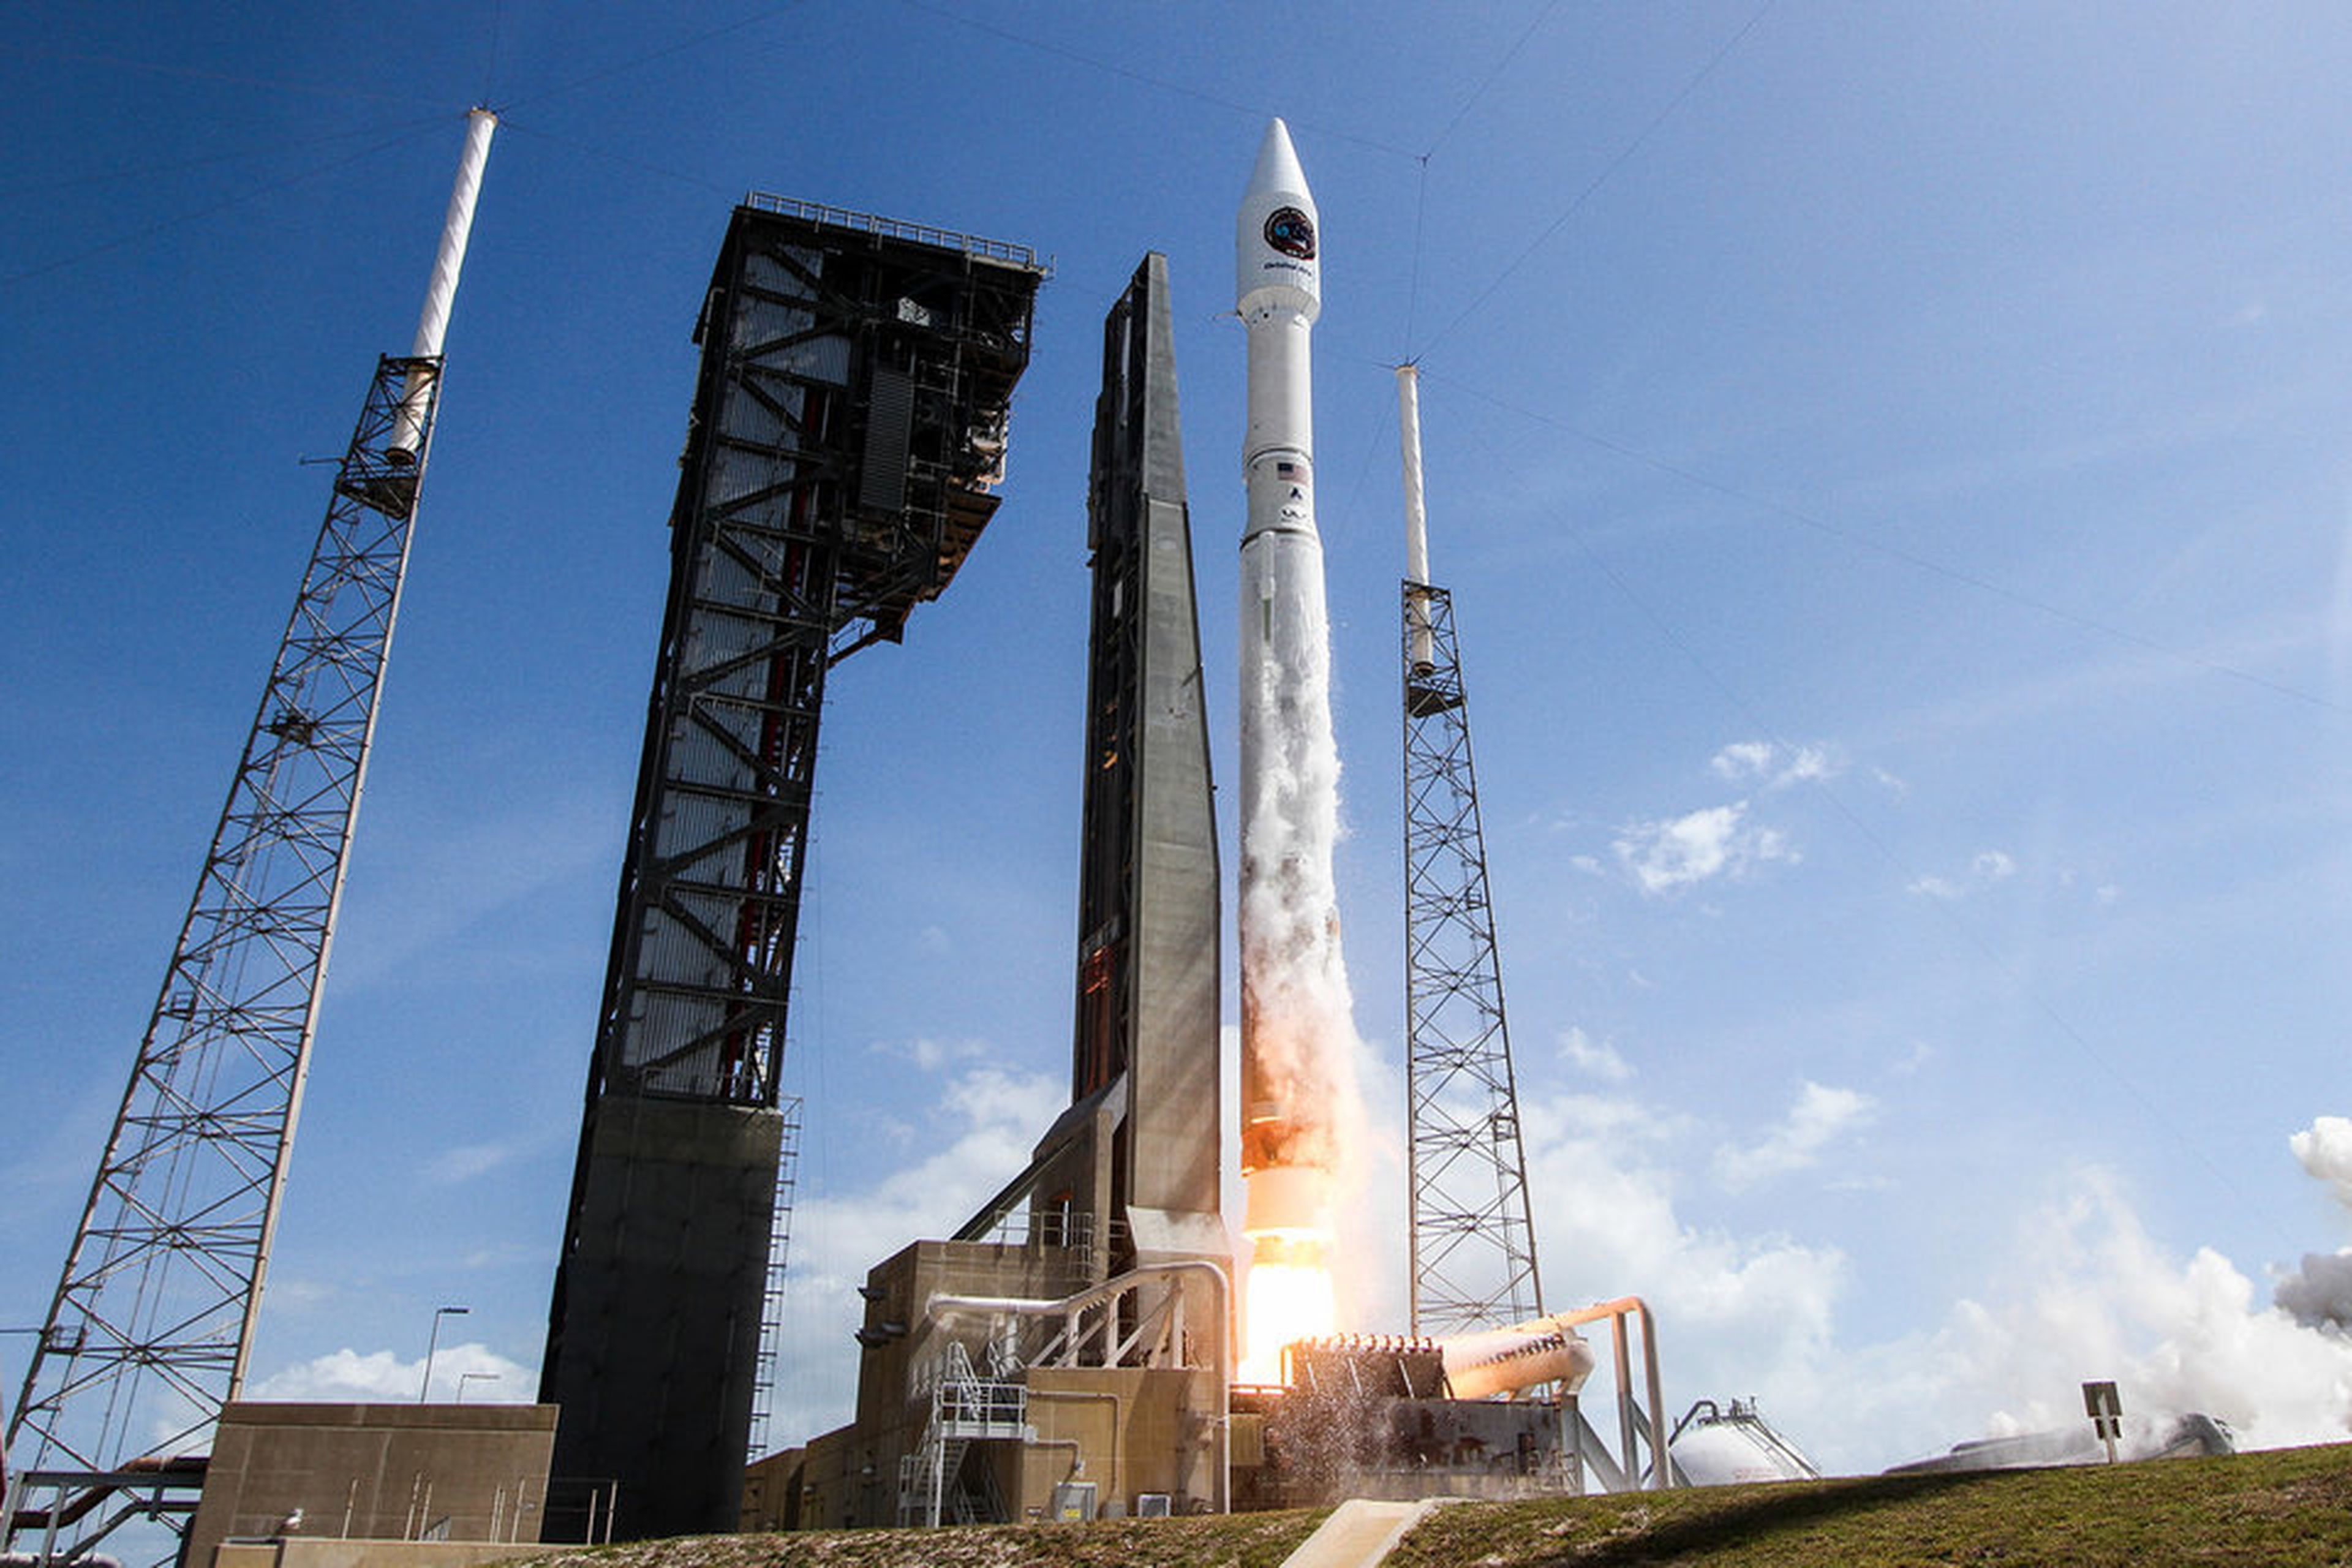 El 45º Ala Espacial de la Fuerza Aérea apoyó el lanzamiento por parte de la NASA de la nave Orbital ATK Cygnus en un cohete Atlas V desde la estación espacial situada en el Cabo Cañaveral, Florida, el pasado 18 de abril de 2017.